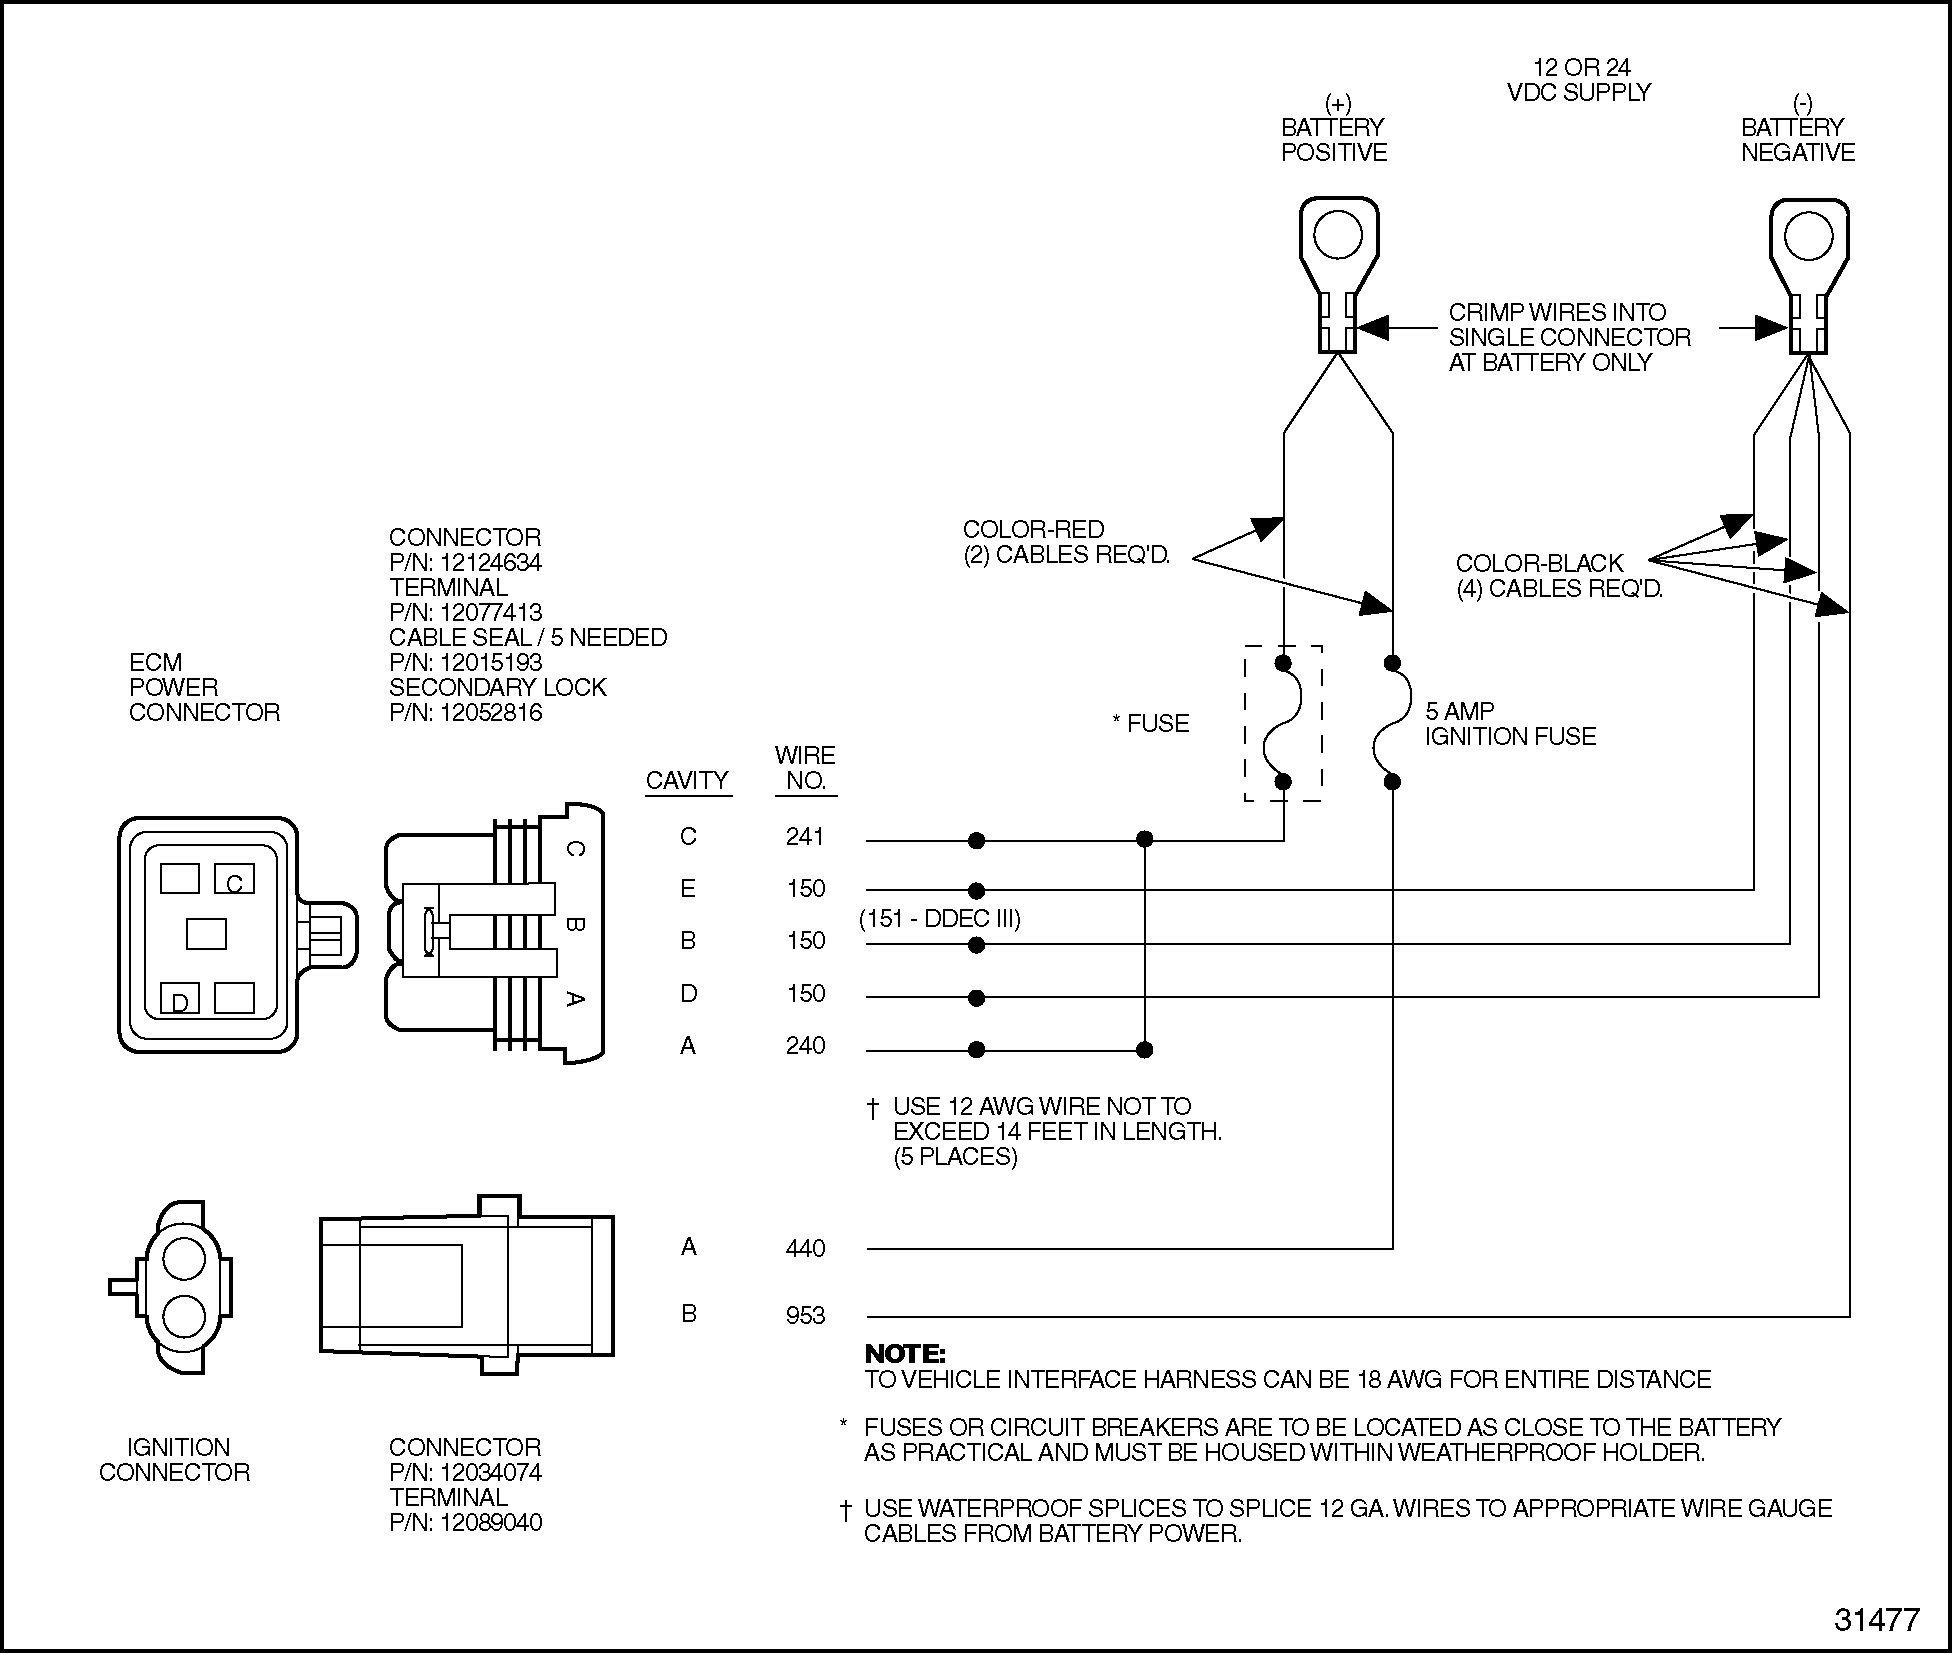 Ddec 3 Ecm Wiring Diagram